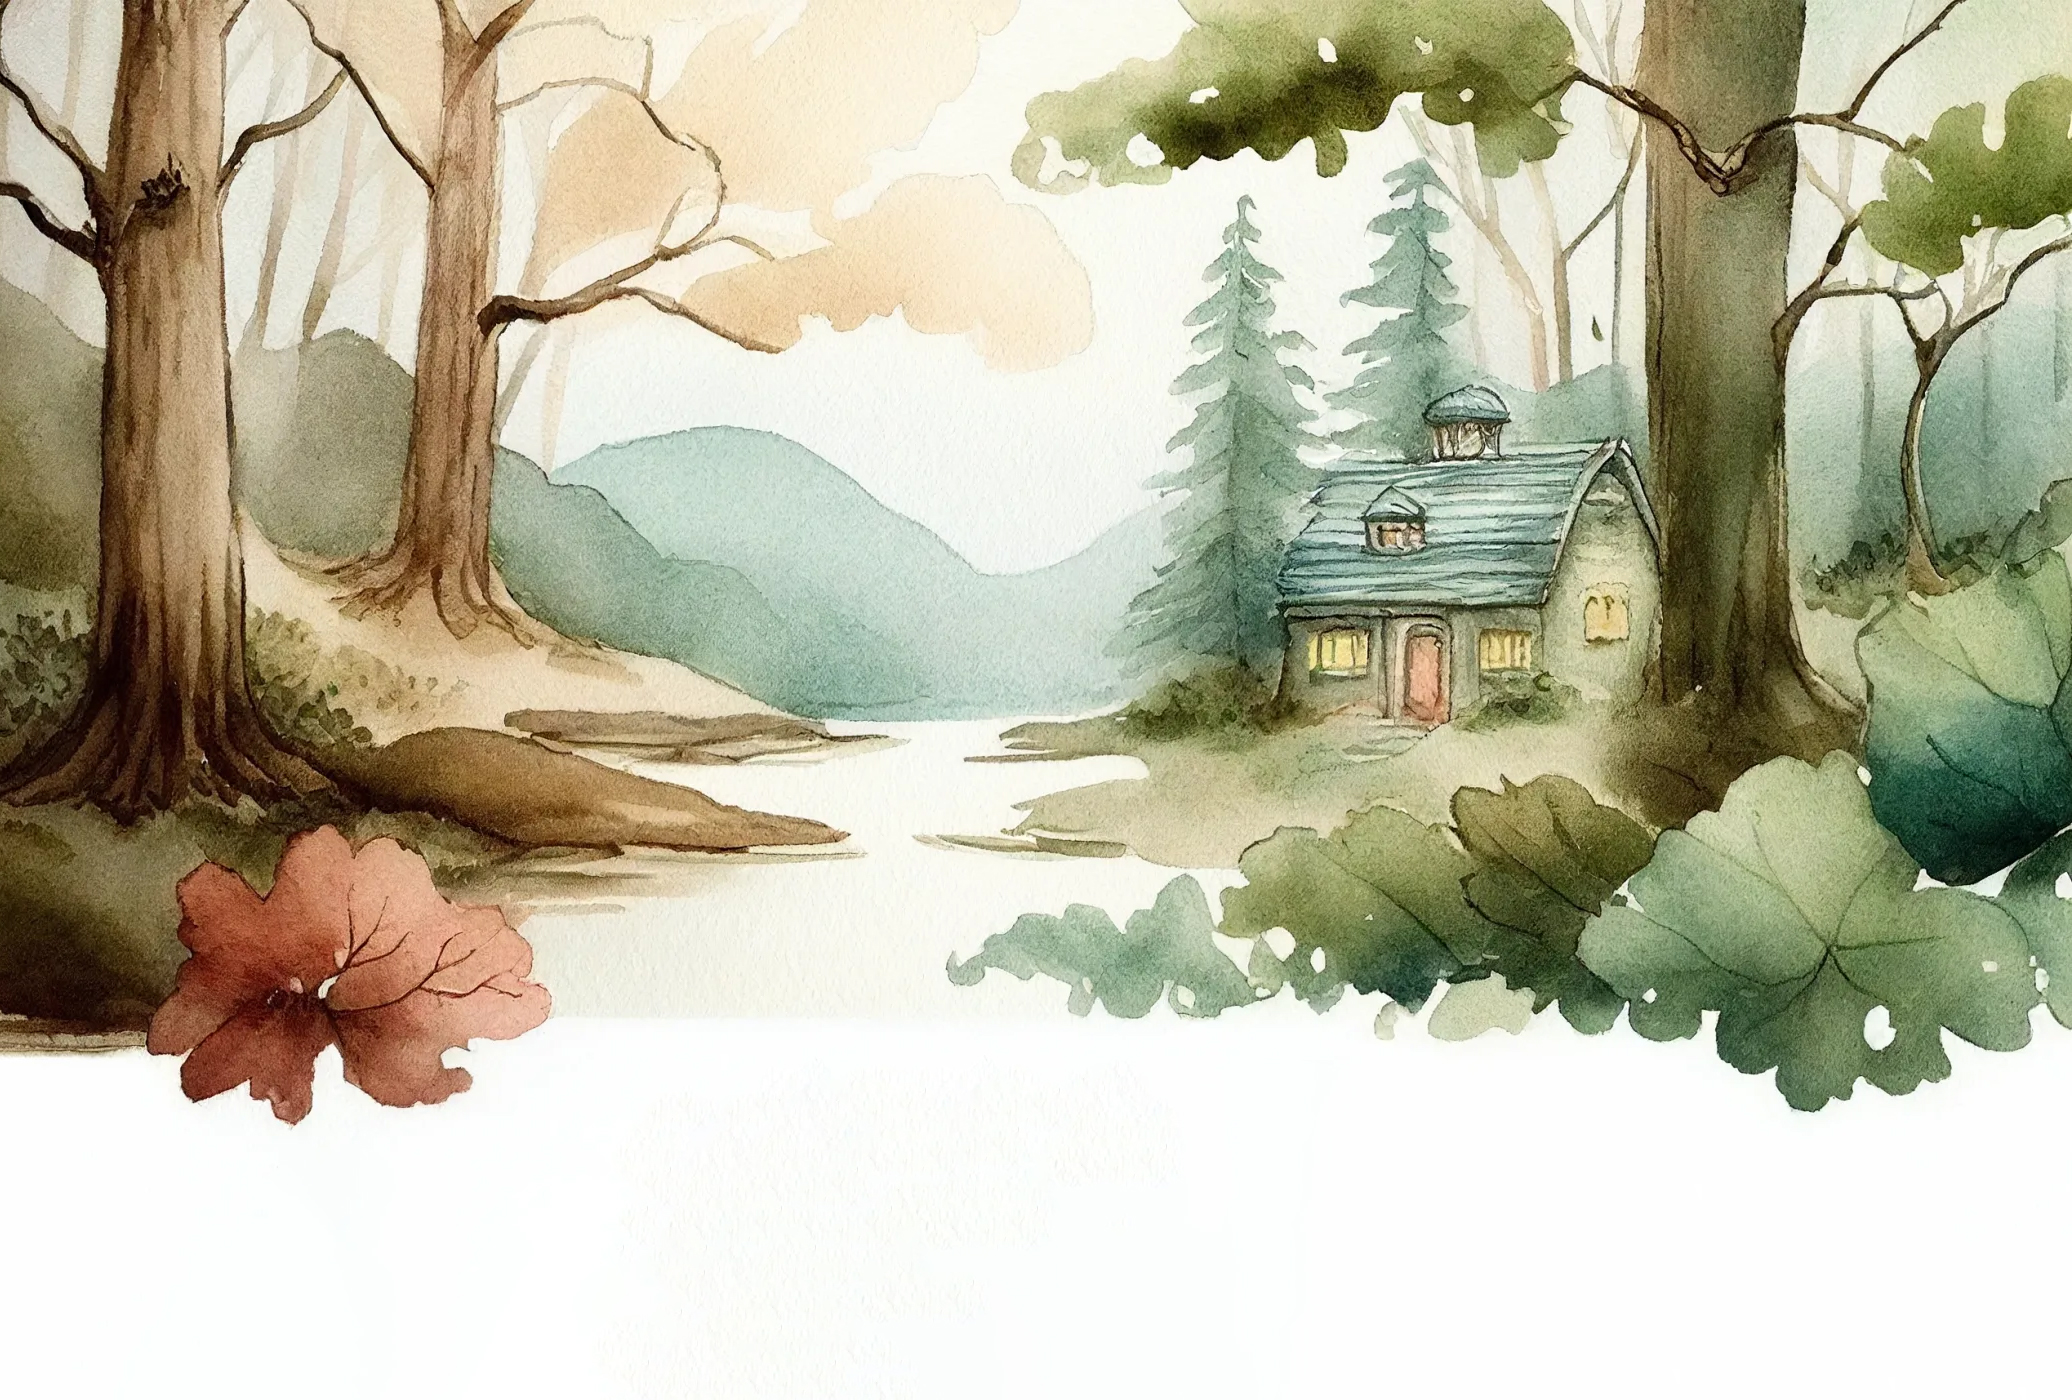 森の中の小さな家の水彩画